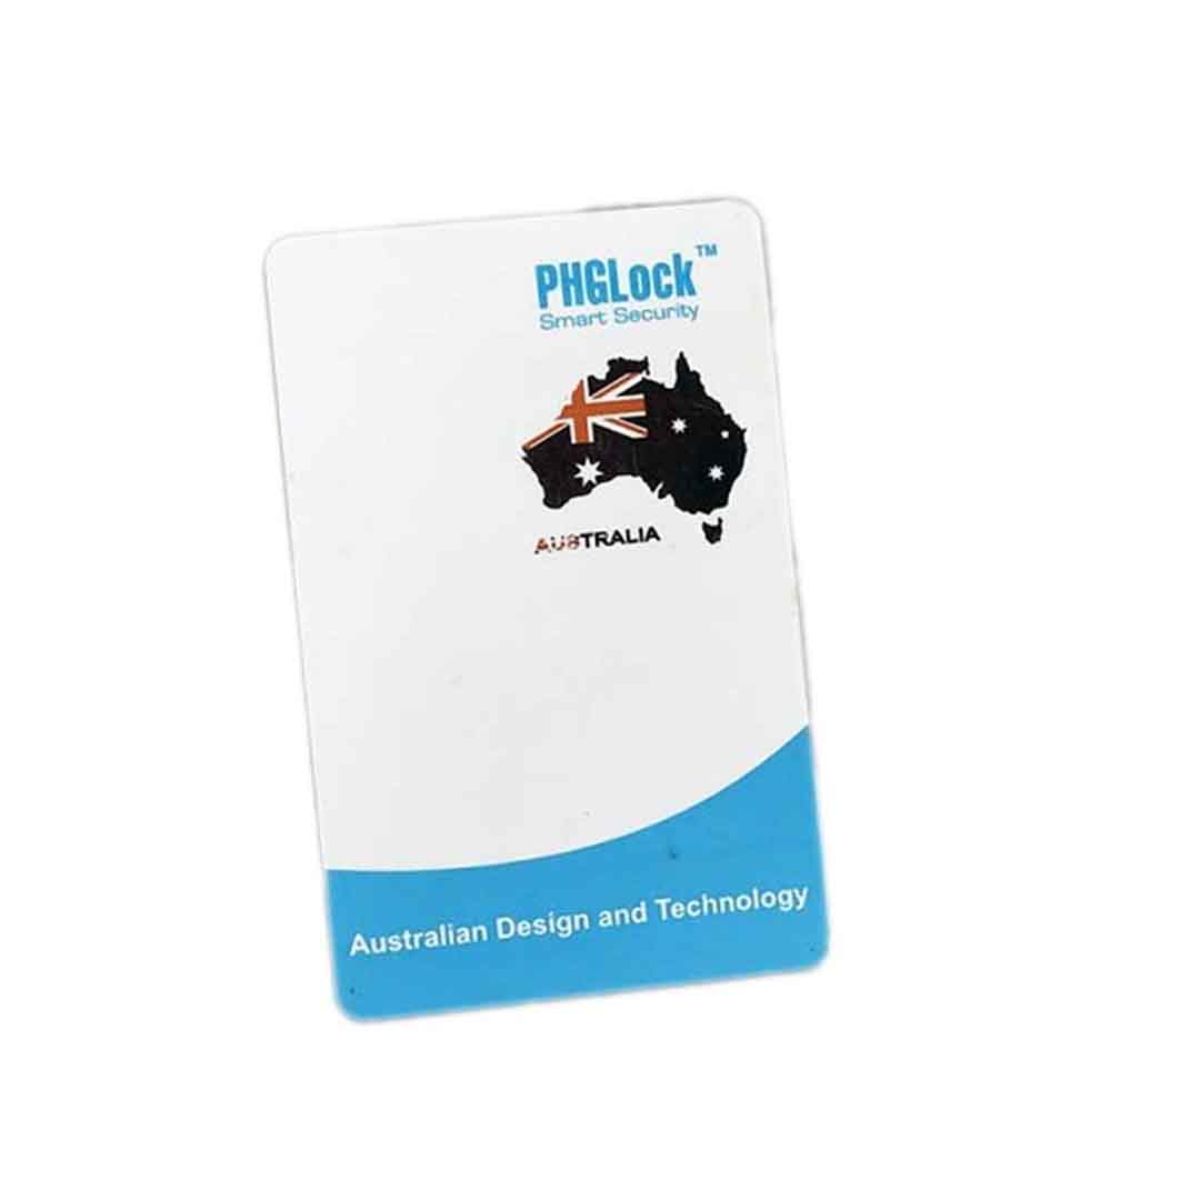 Thẻ cảm ứng tích hợp MITI CARD (Temic & Mifare) PHGLock chất liệu ABS cực bền, chống thấm nước